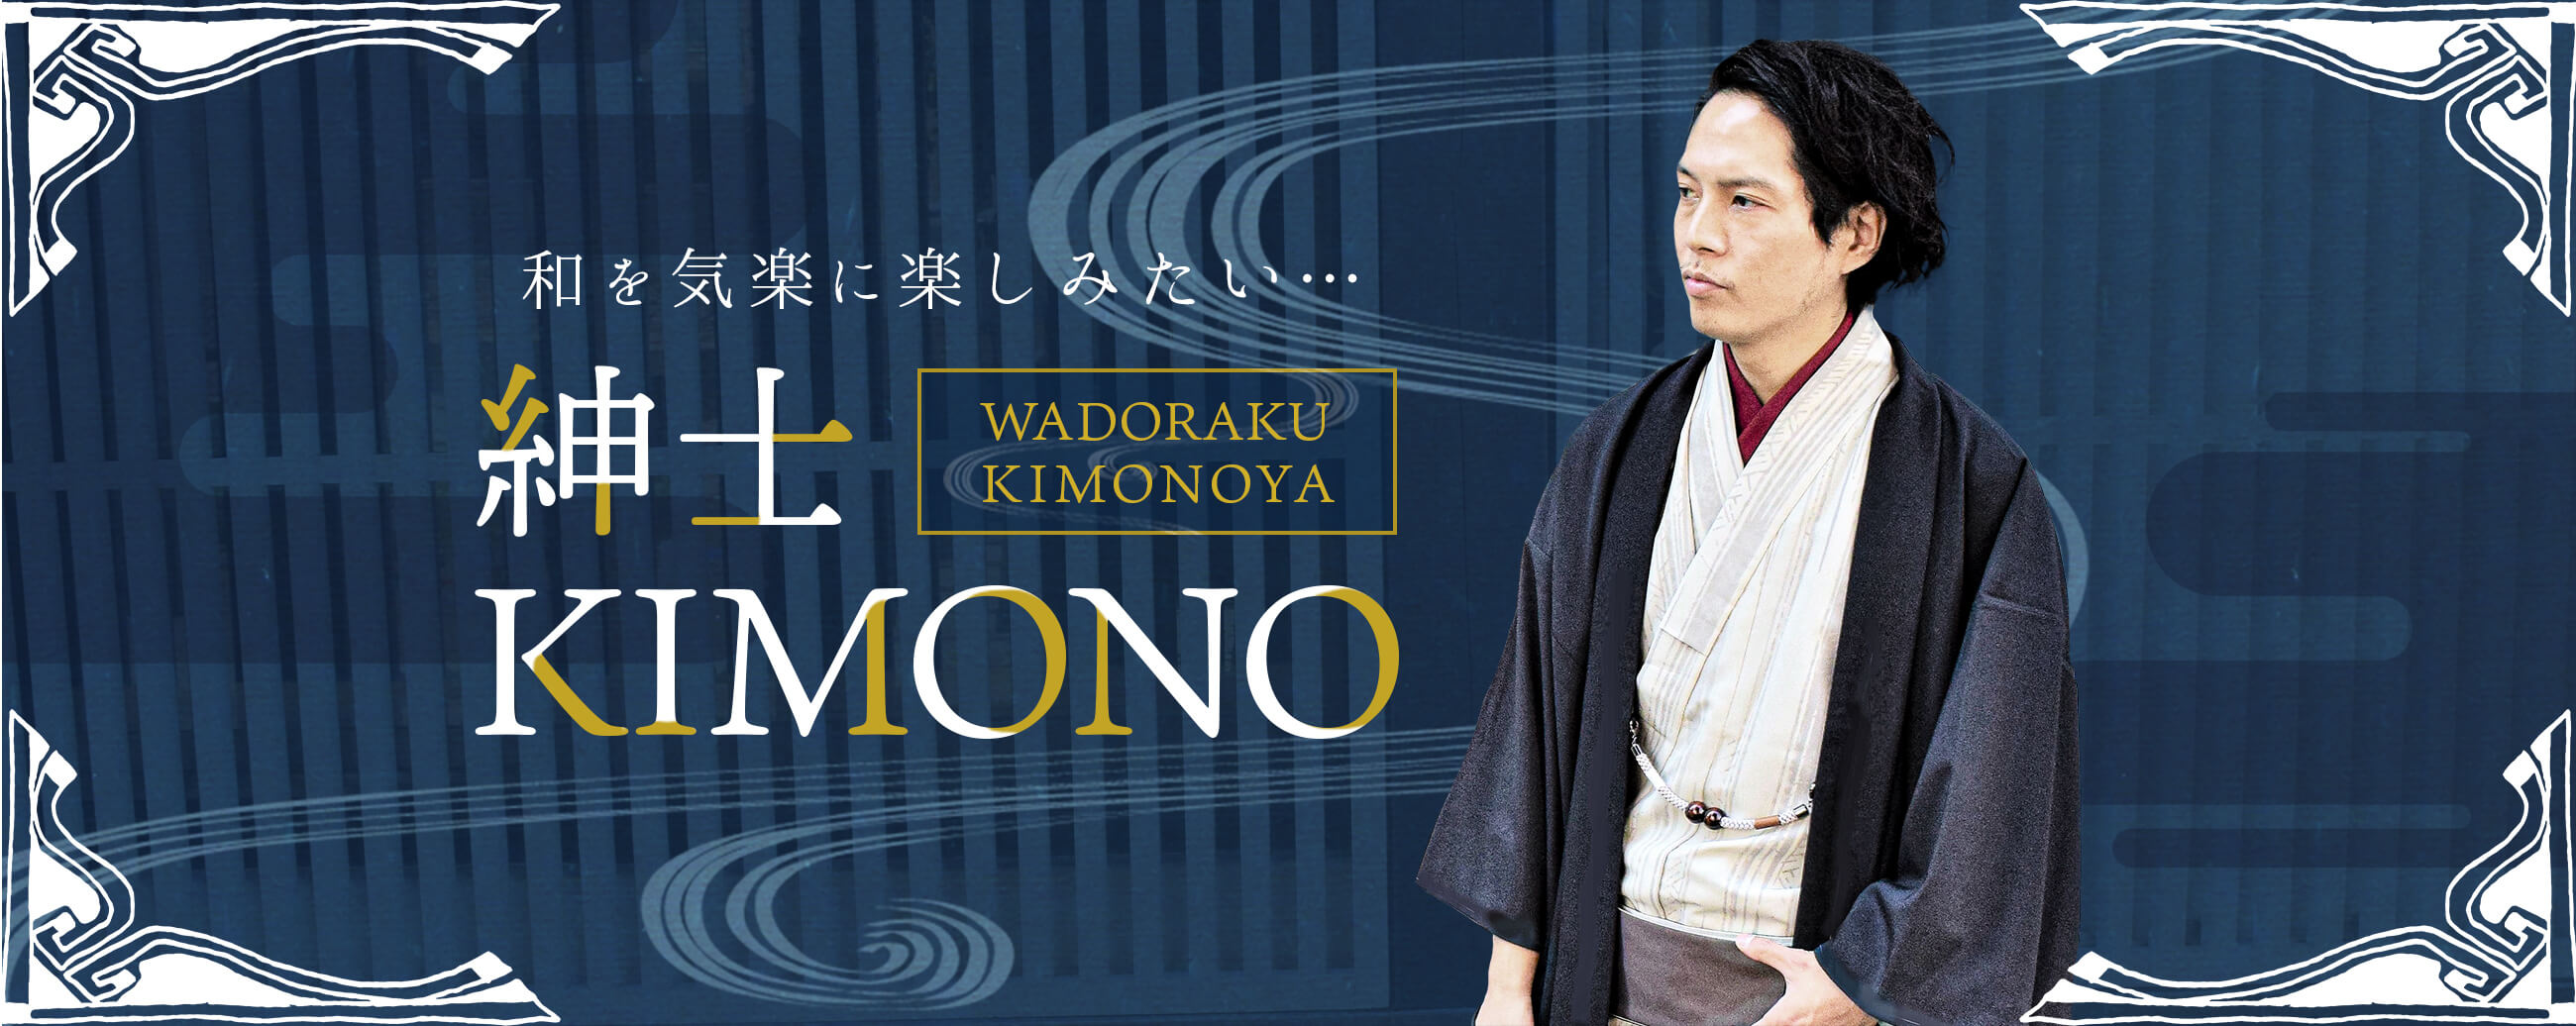 WADORAKU KIMONOYA 和を気楽に楽しみたい… 紳士KIMONO